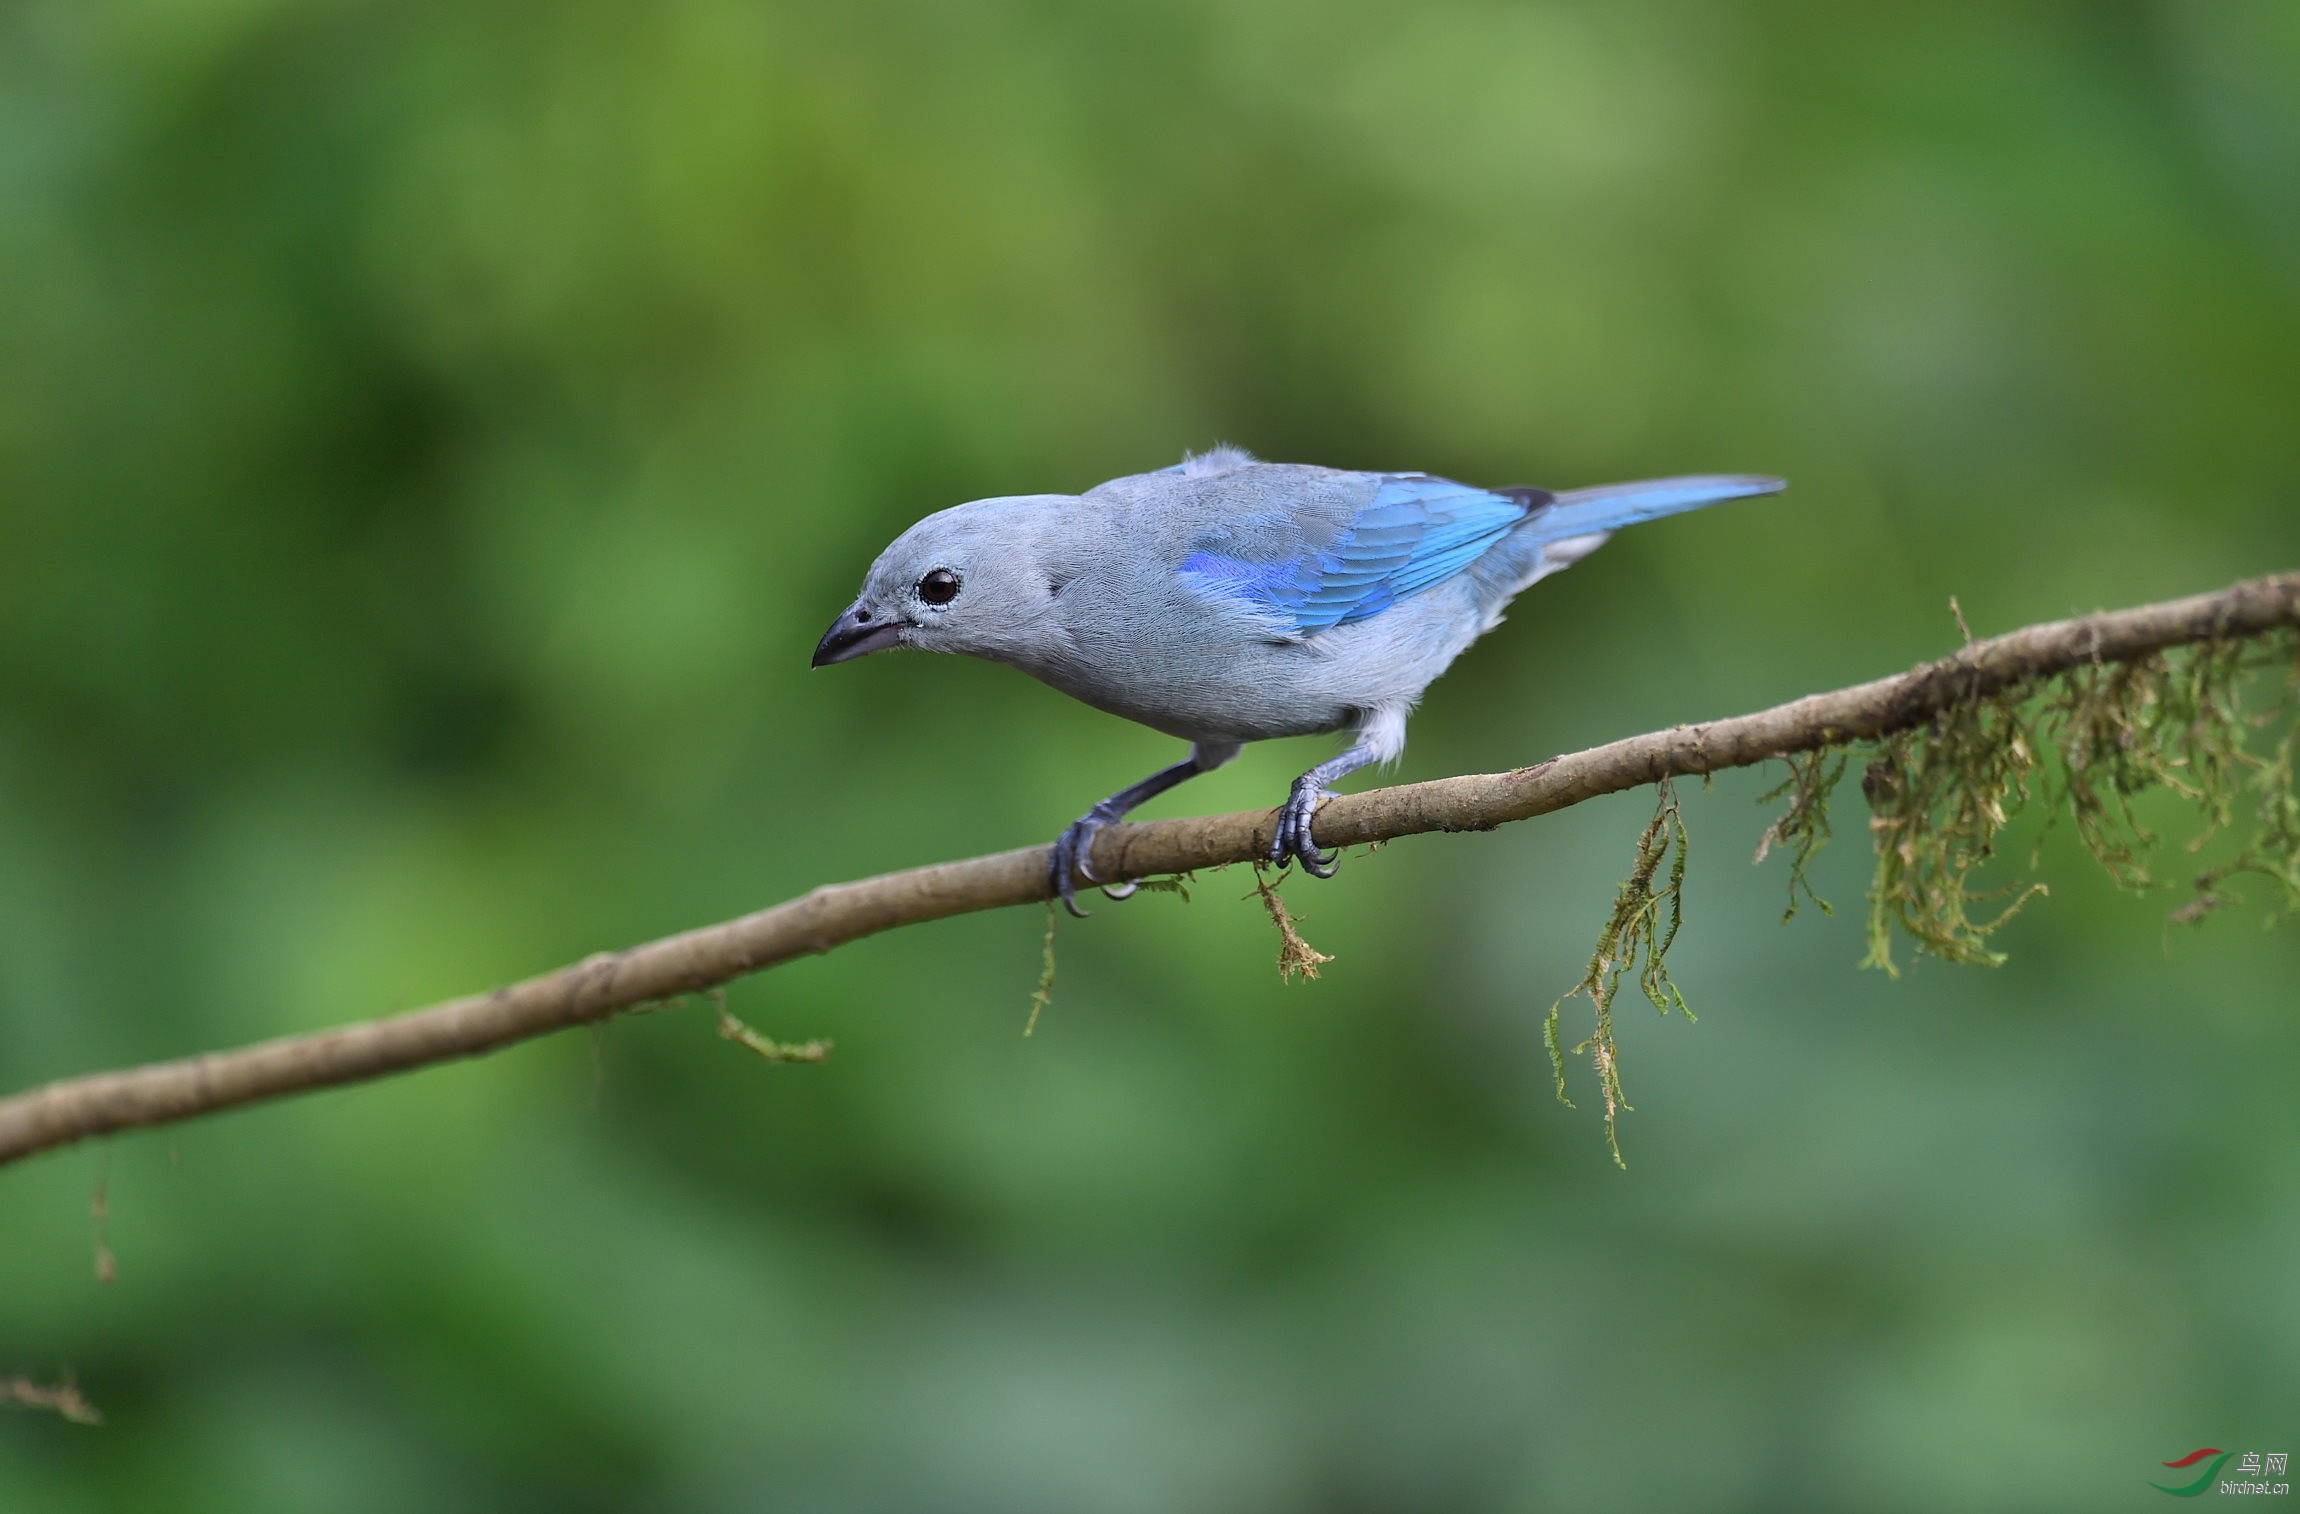 蓝灰色长尾巴的鸟图片